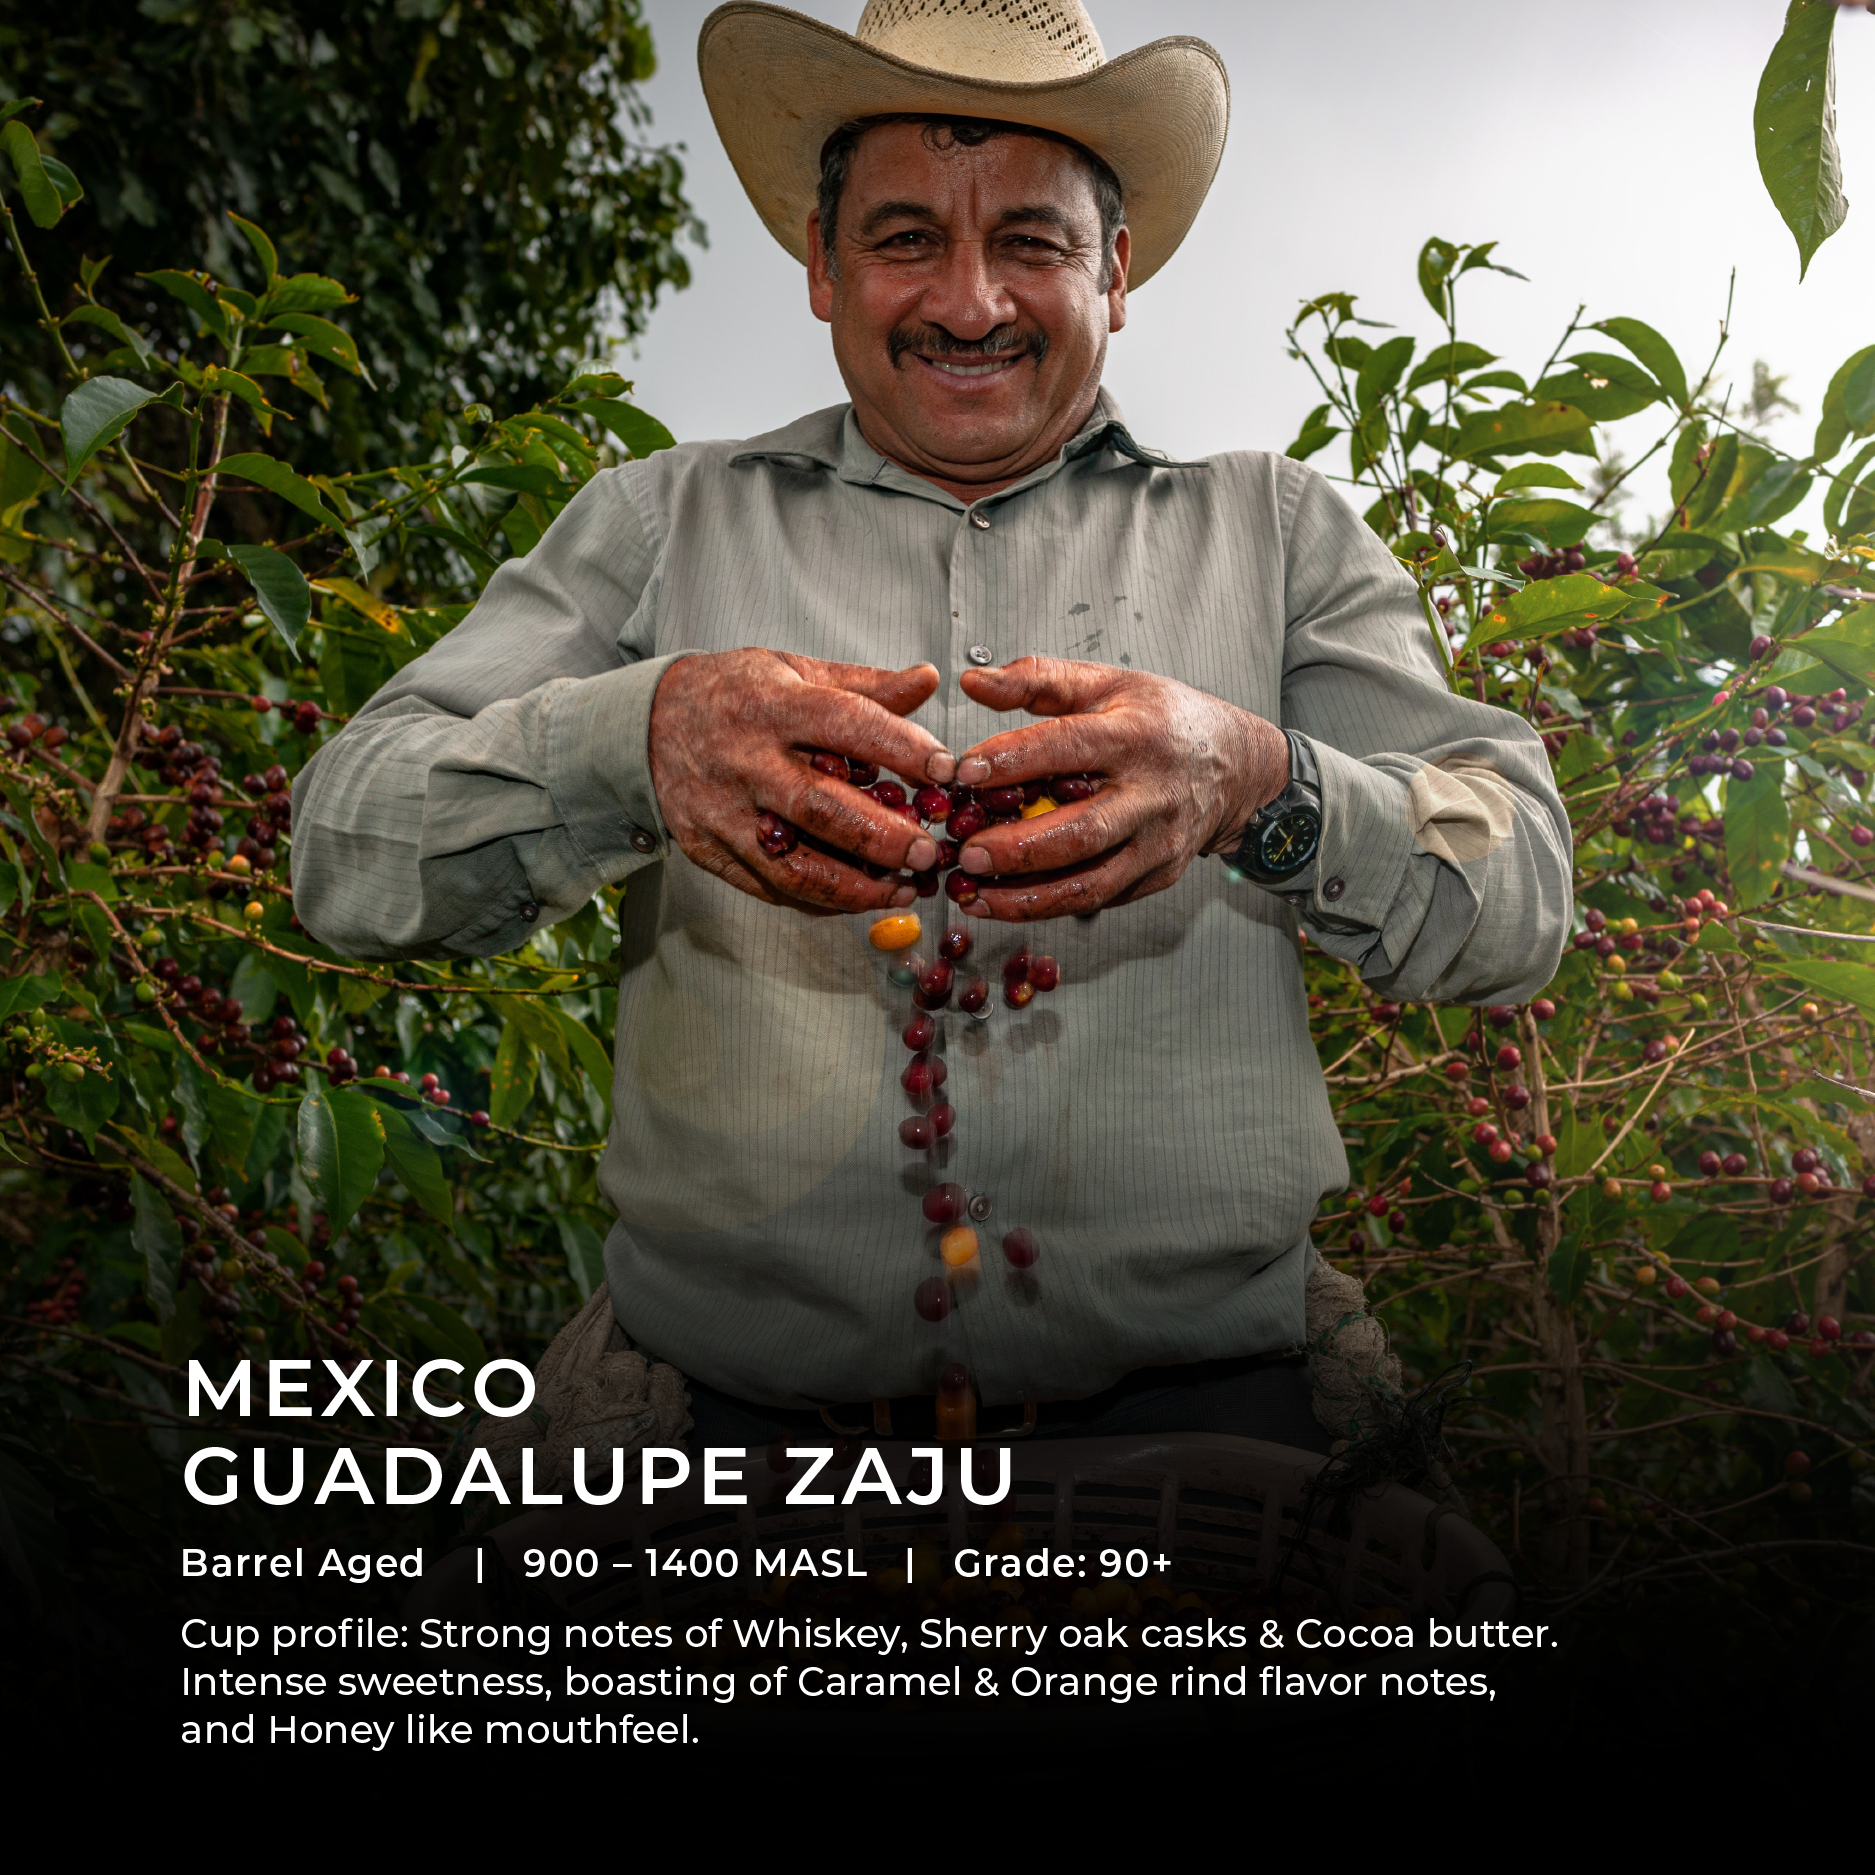 Mexico - Guadalupe Zaju (BARREL AGED)